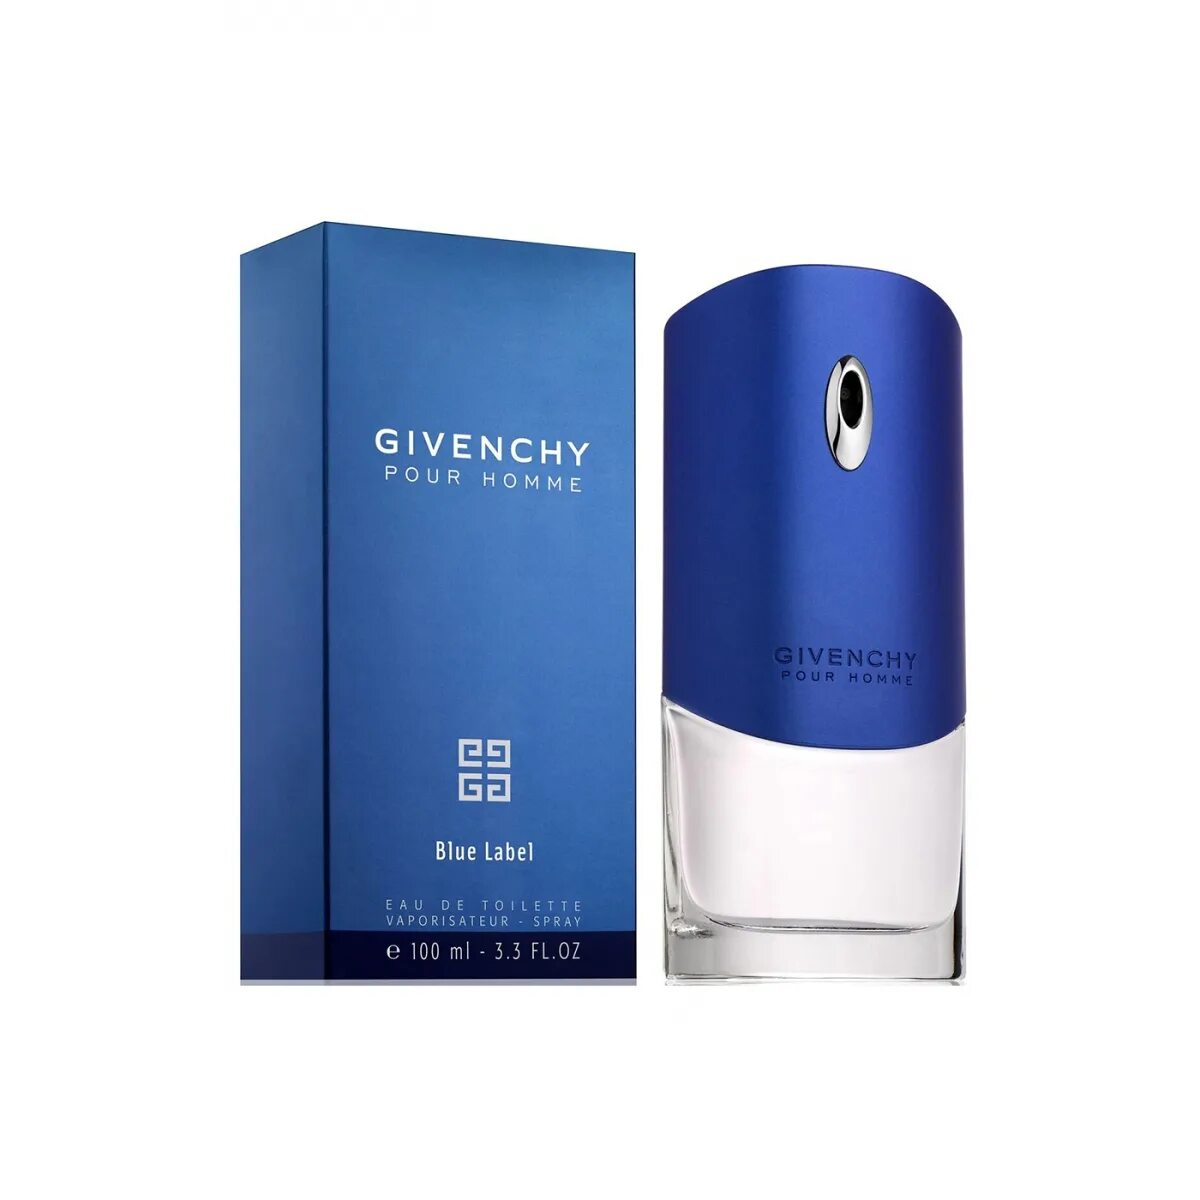 Givenchy pour homme Blue Label 100ml. Givenchy men/туалетная вода Givenchy pour homme Blue Label, 100 мл / Givenchy/. Мужские духи Givenchy "pour homme Blue Label" 100 ml. Givenchy Blue Label 100 мл.